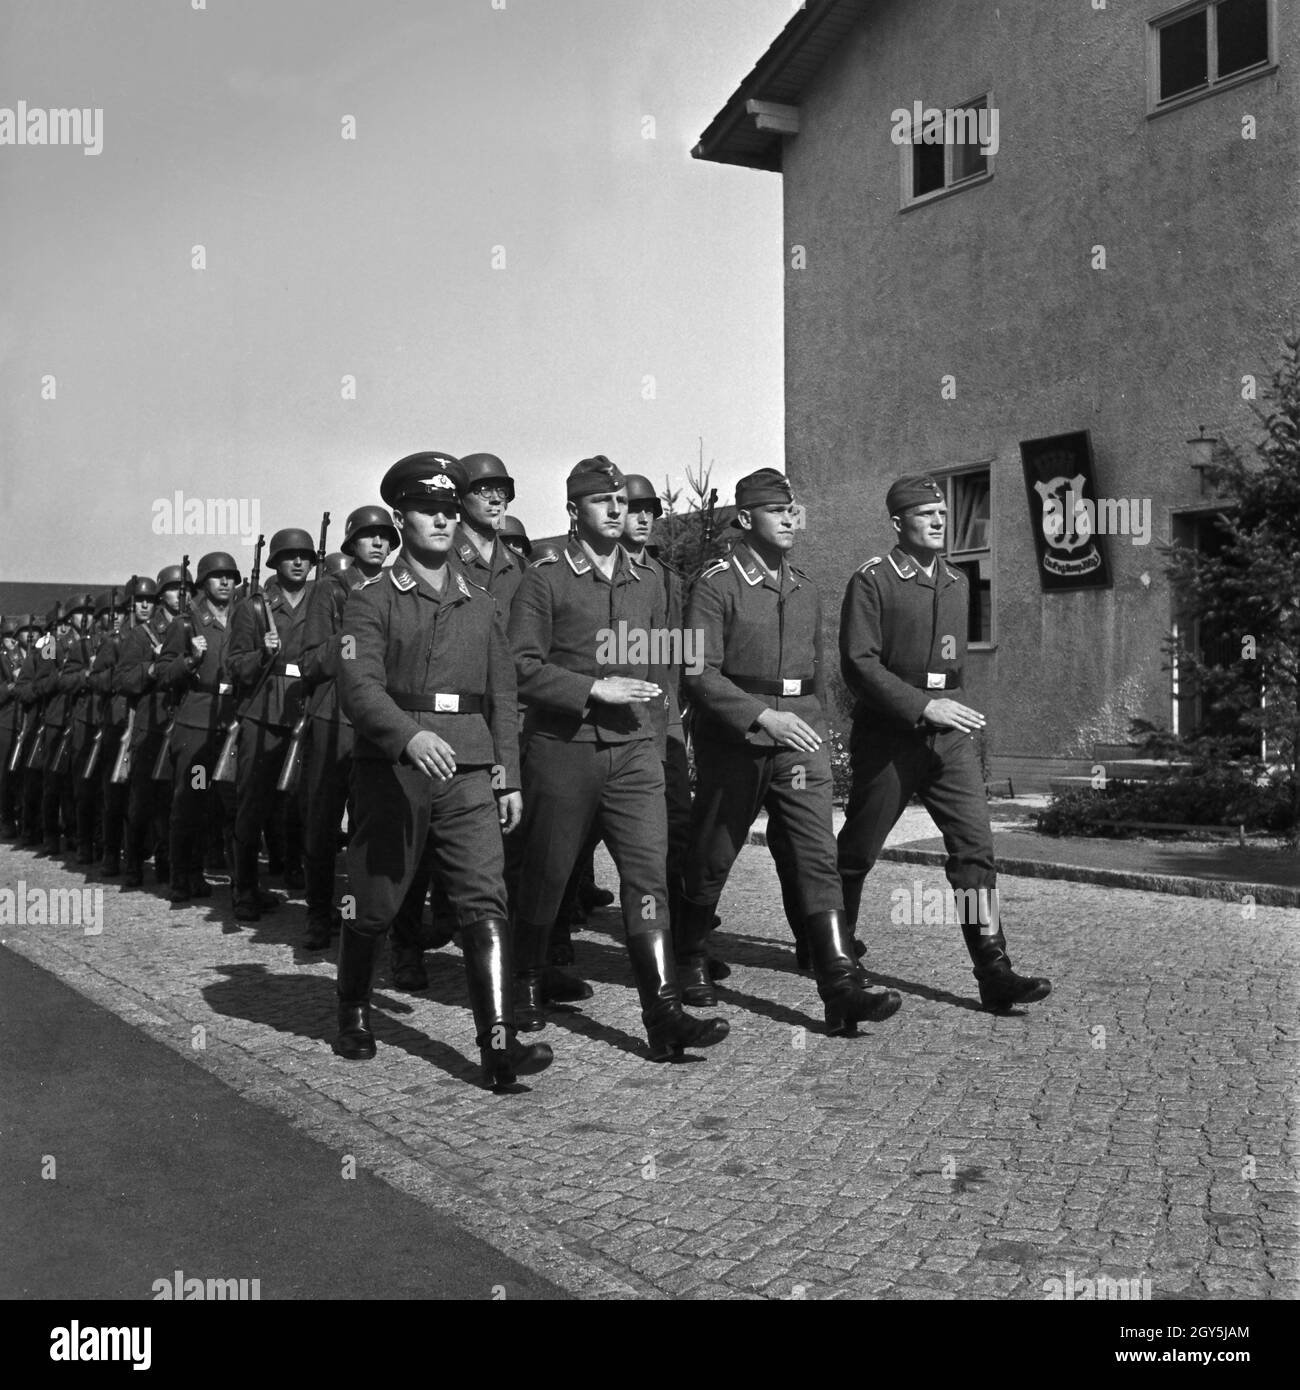 Original-Bildunterschrift: Ausmarsch zum Exerzierplatz, Deutschland 1940er Jahre. Marching to the drill ground, Germany 1940s. Stock Photo